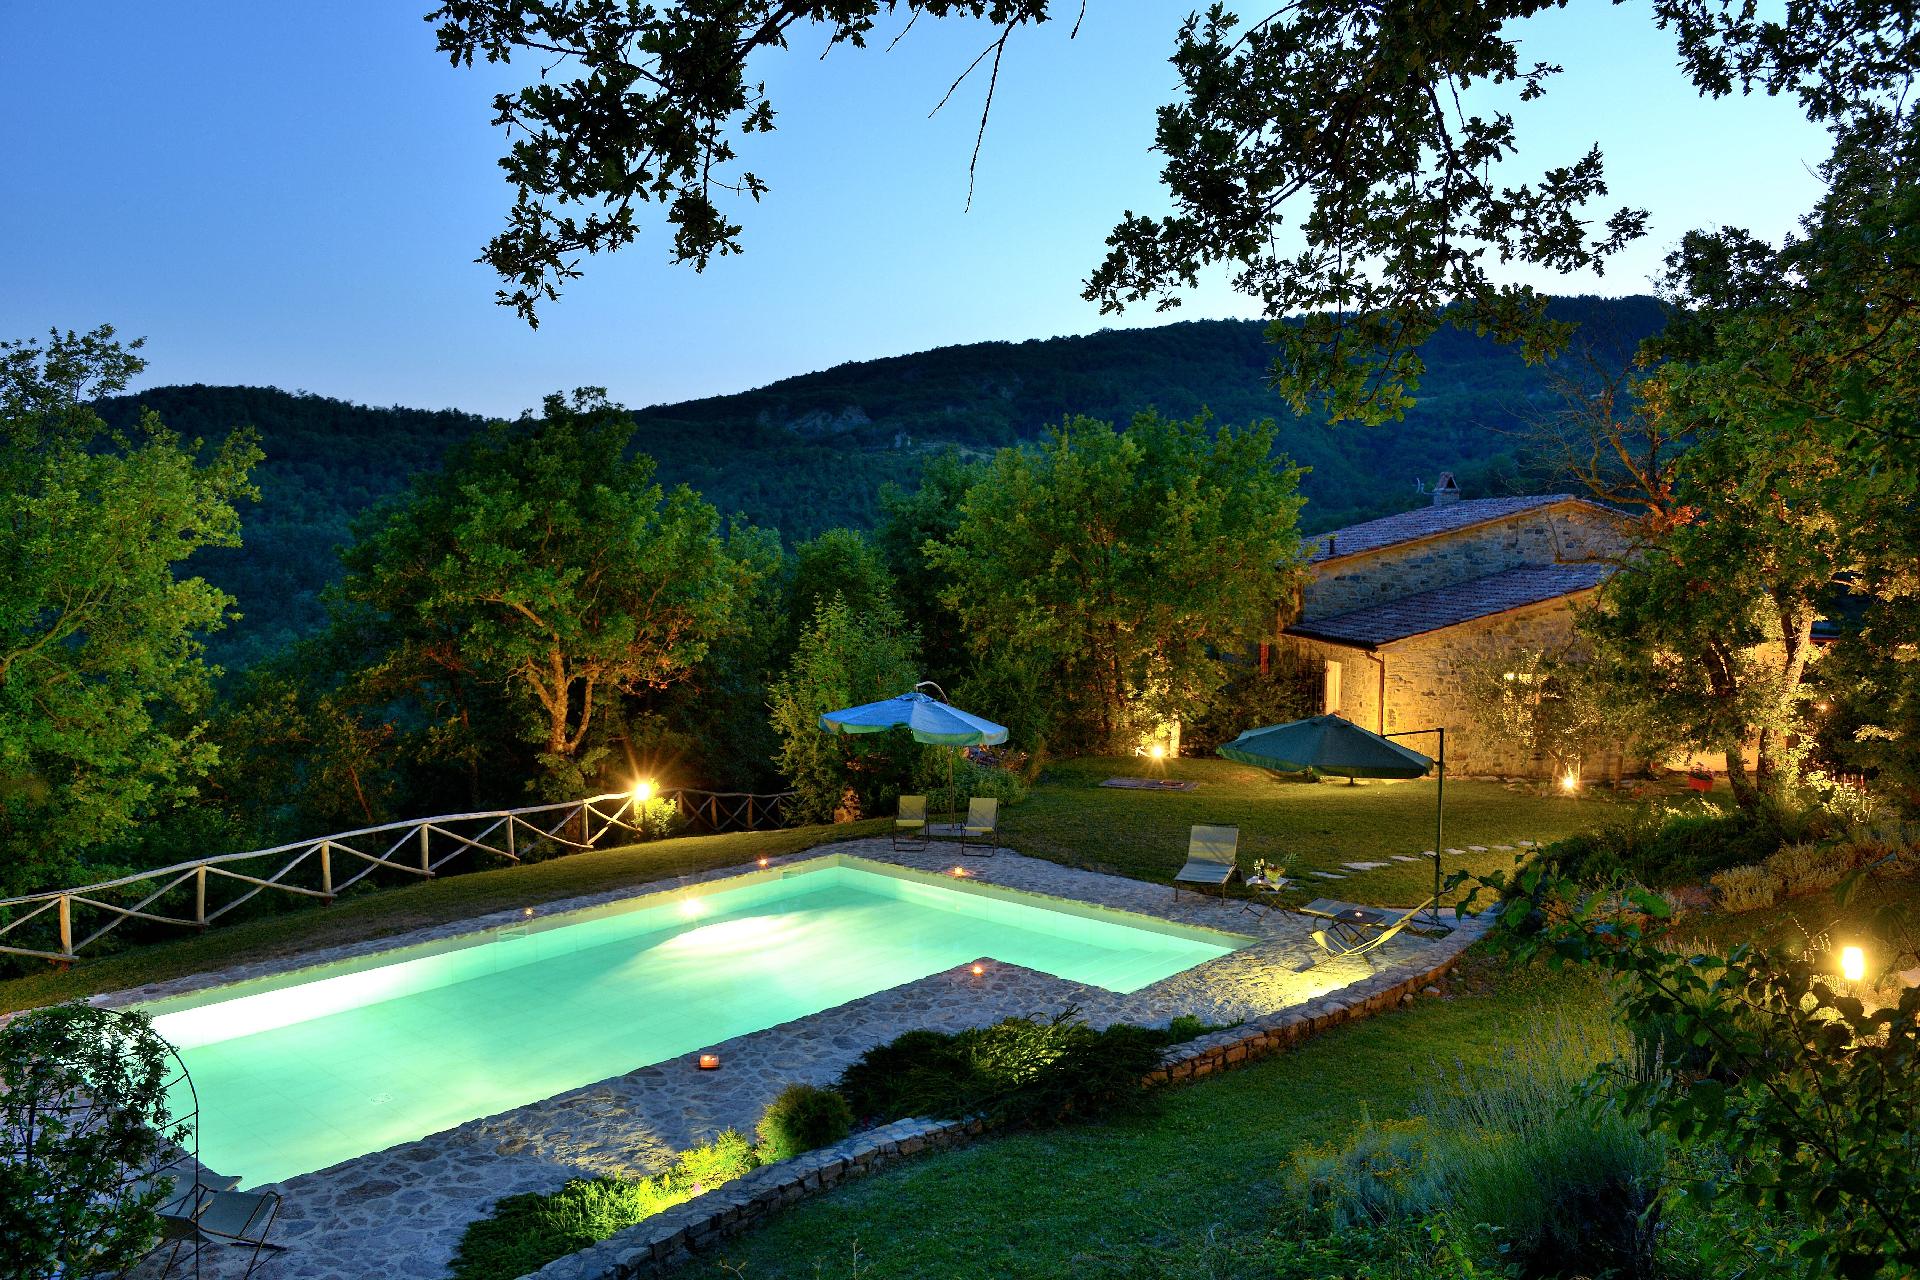 Villa mit Pool für einen einmaligen Urlaub im Ferienhaus in Europa